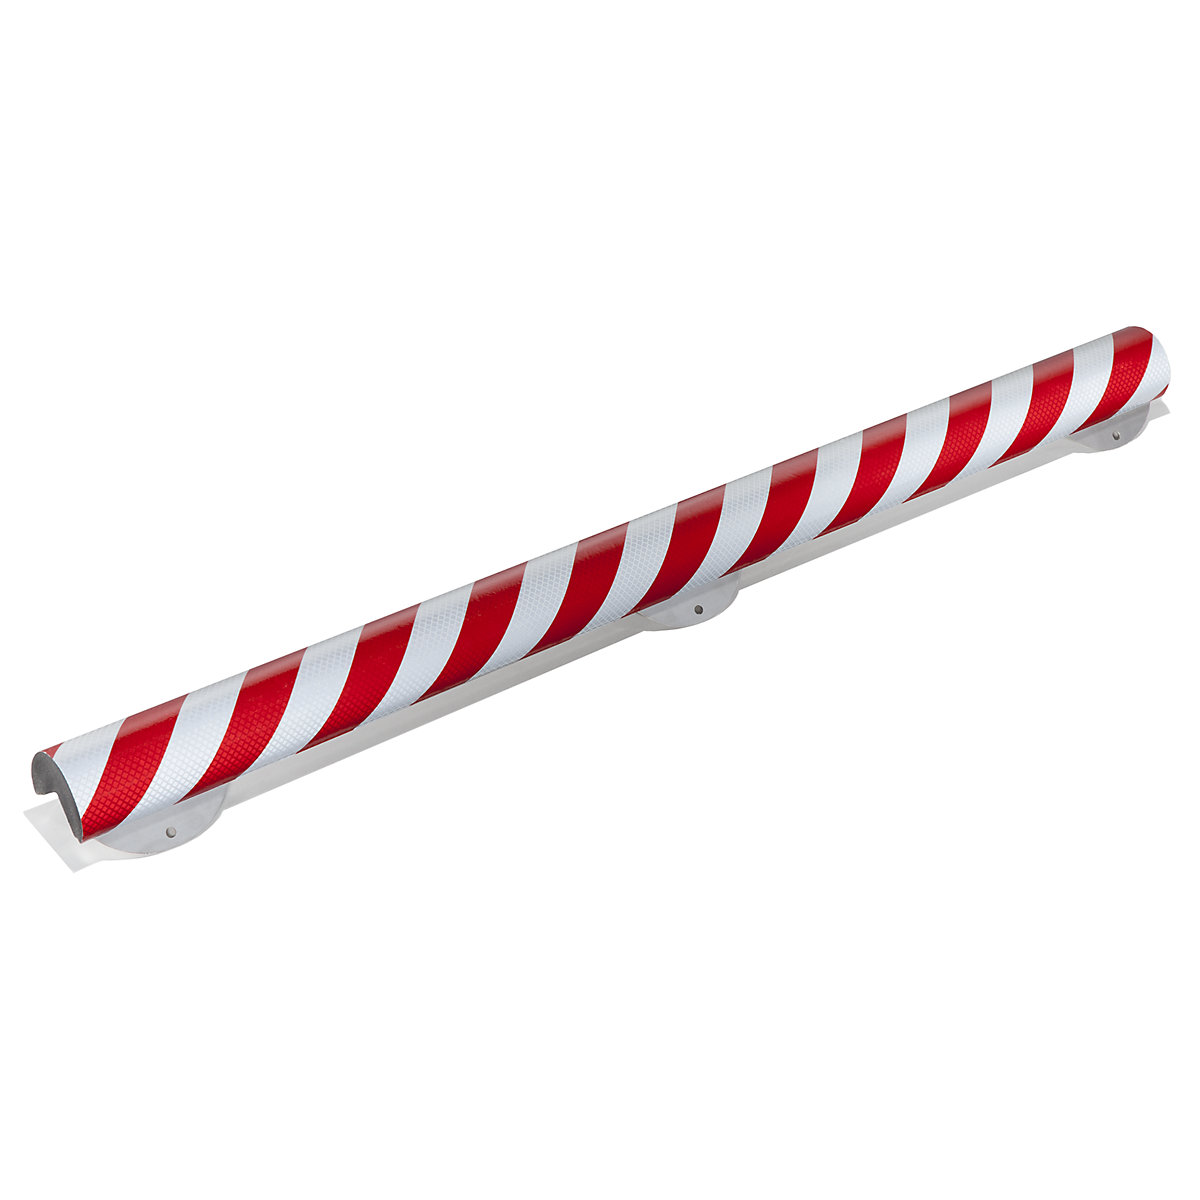 Proteção de cantos Knuffi® com calha de montagem – SHG, tipo A+, unidade de 1 m, vermelho/branco refletor-13